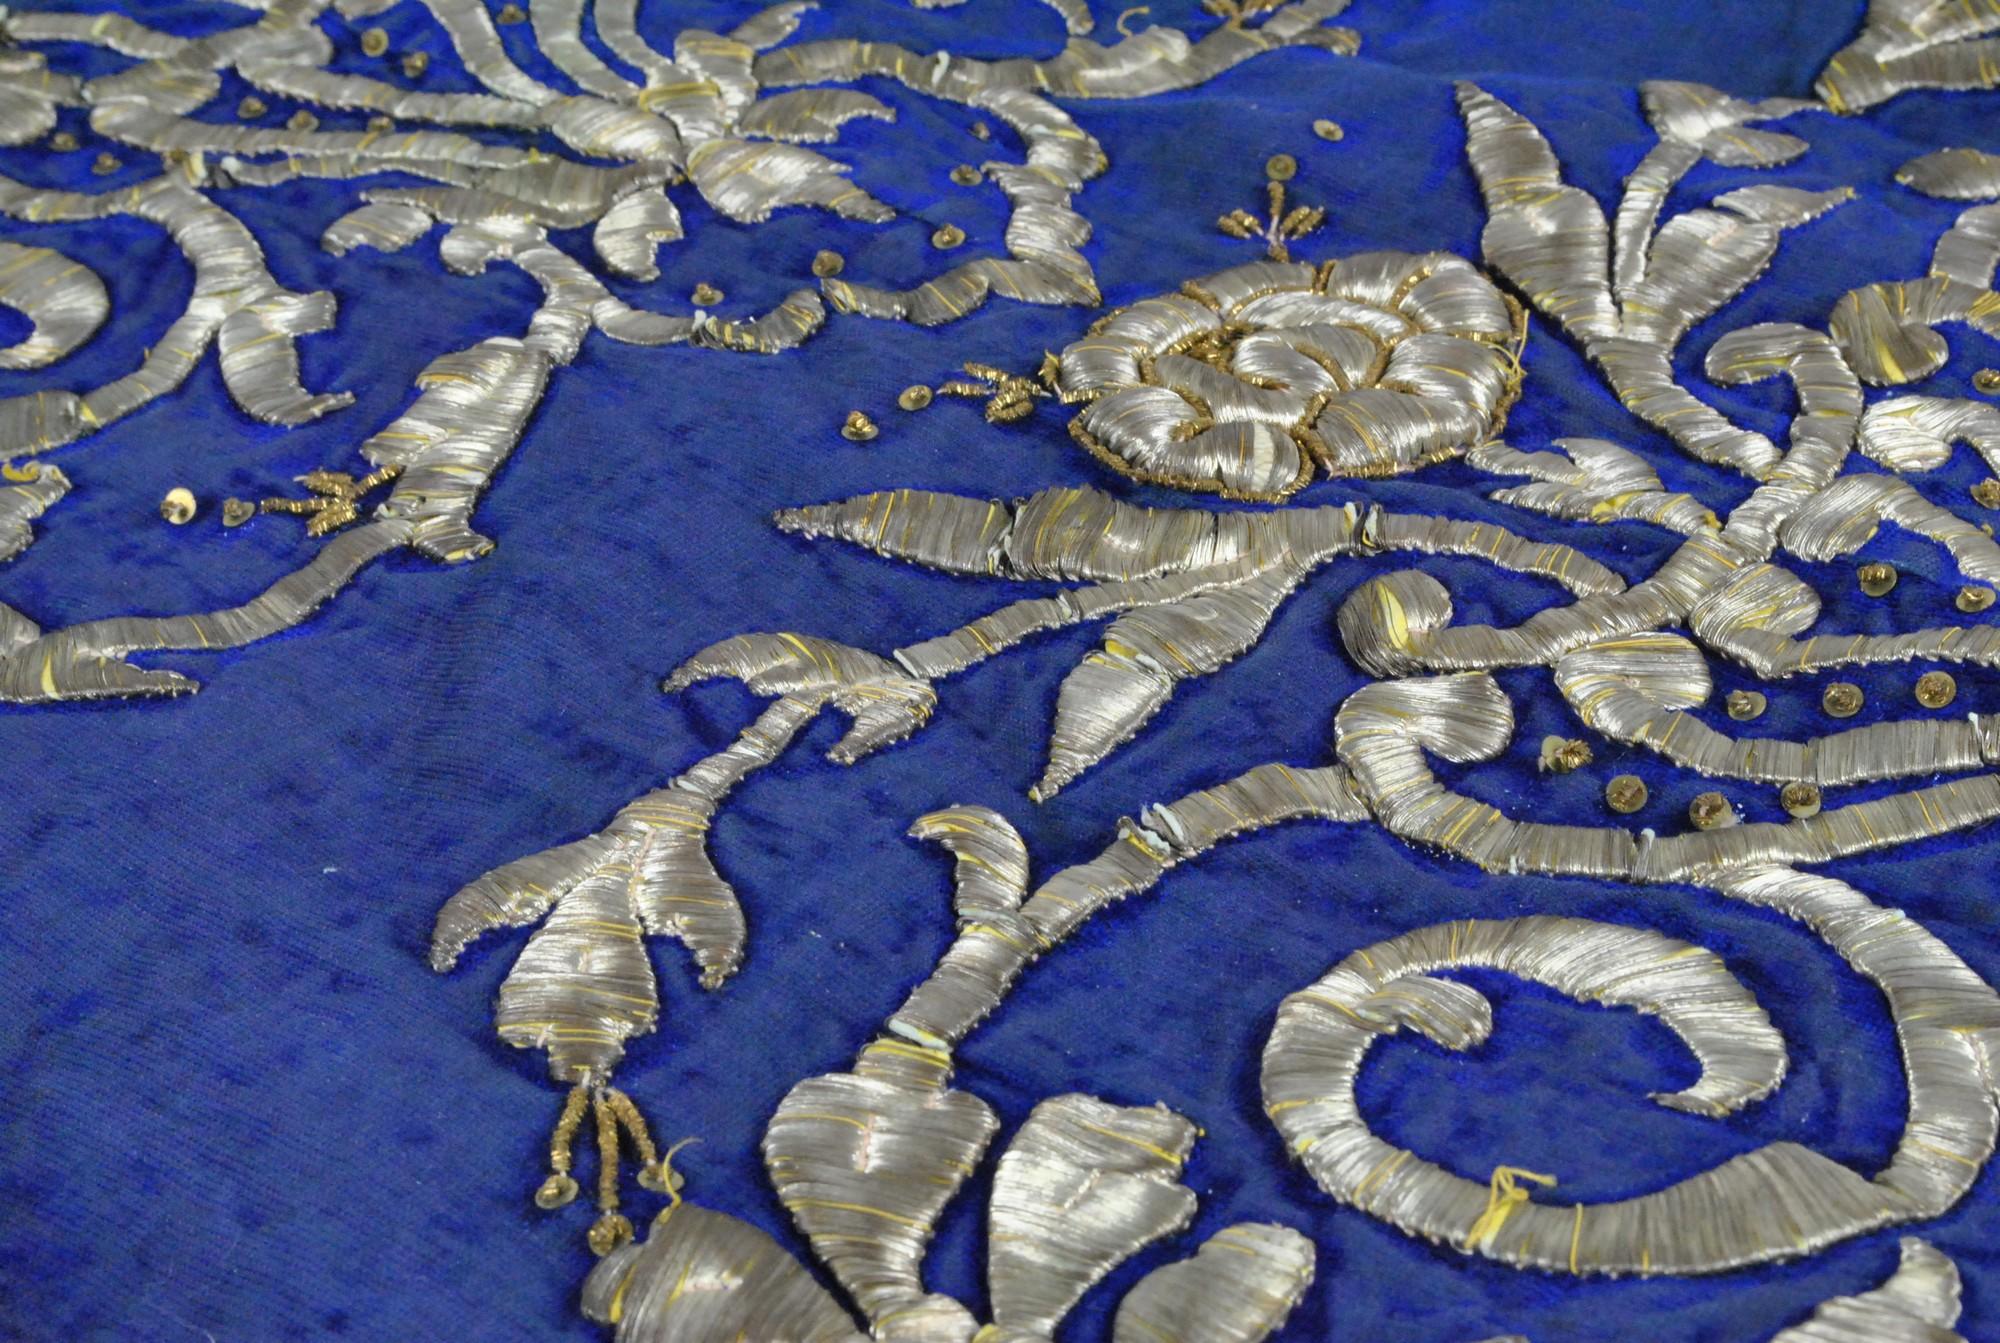 Schöner orientalischer Kaftan aus blauem Stoff, ganz mit Blumen und Arabesken aus Silberfaden bestickt

Guter Zustand trotz einiger Abnutzungserscheinungen

19. Jahrhundert

Höhe ca. 137 cm